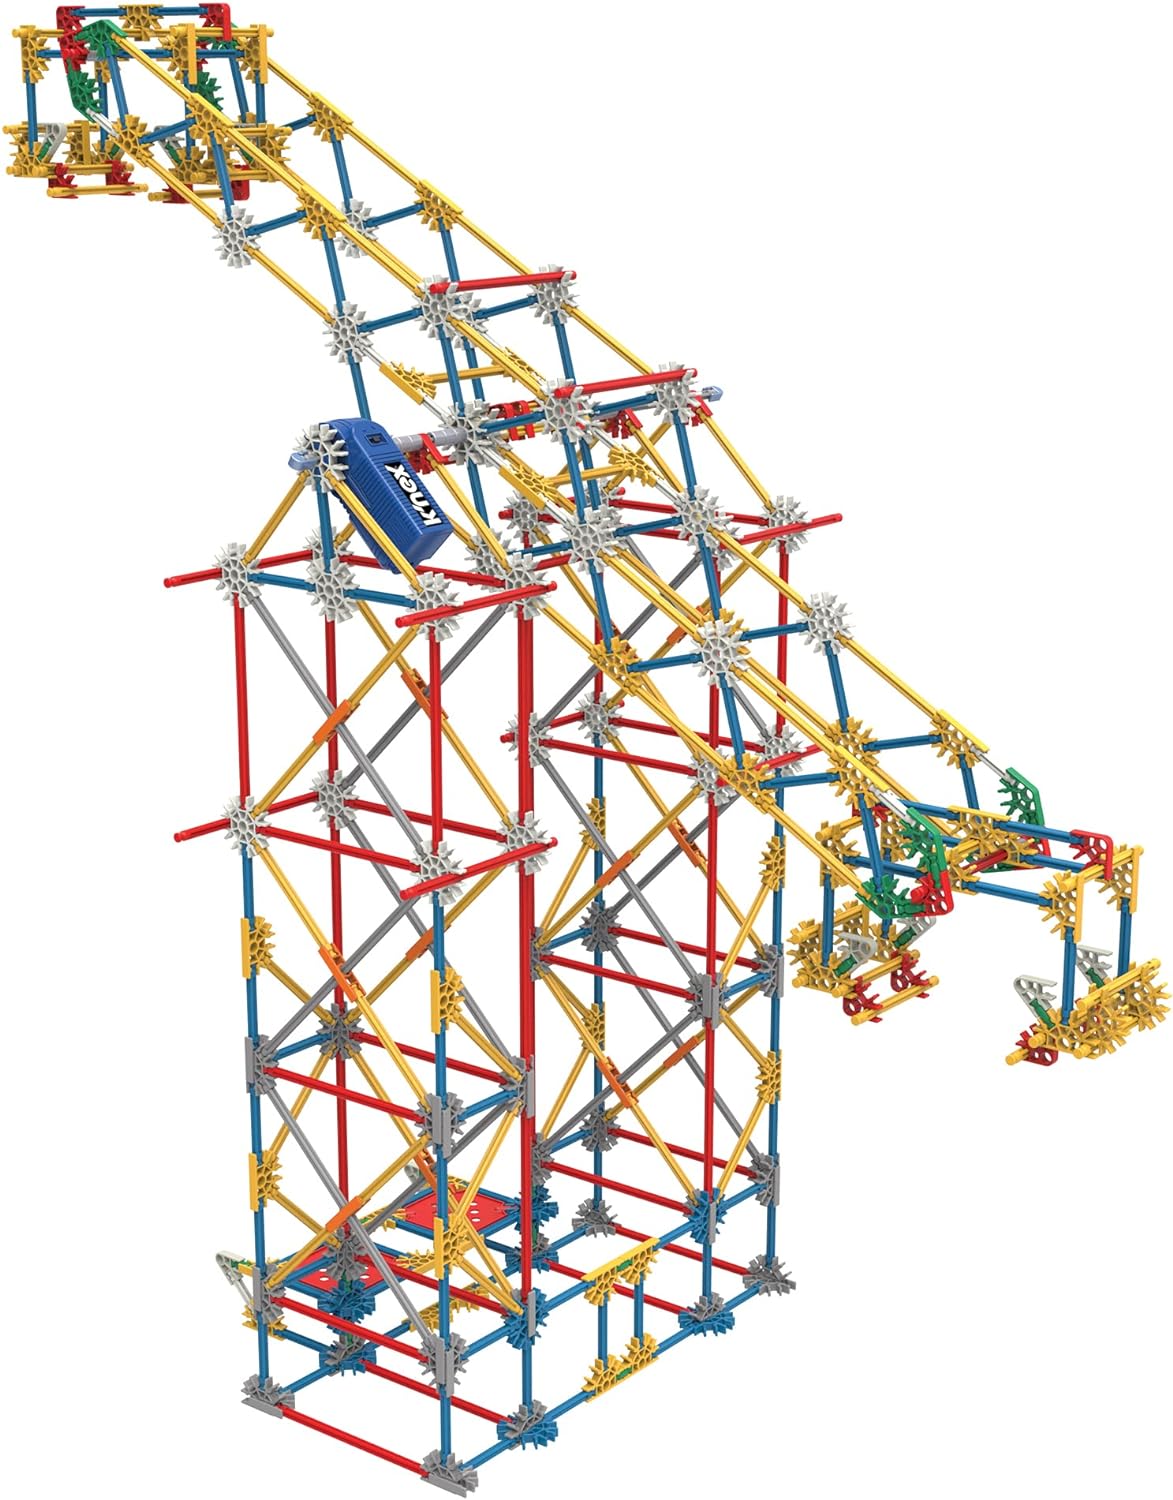 K’NEX Thrill Rides 3-in-1 Classic Amusement Park Building Set 17035